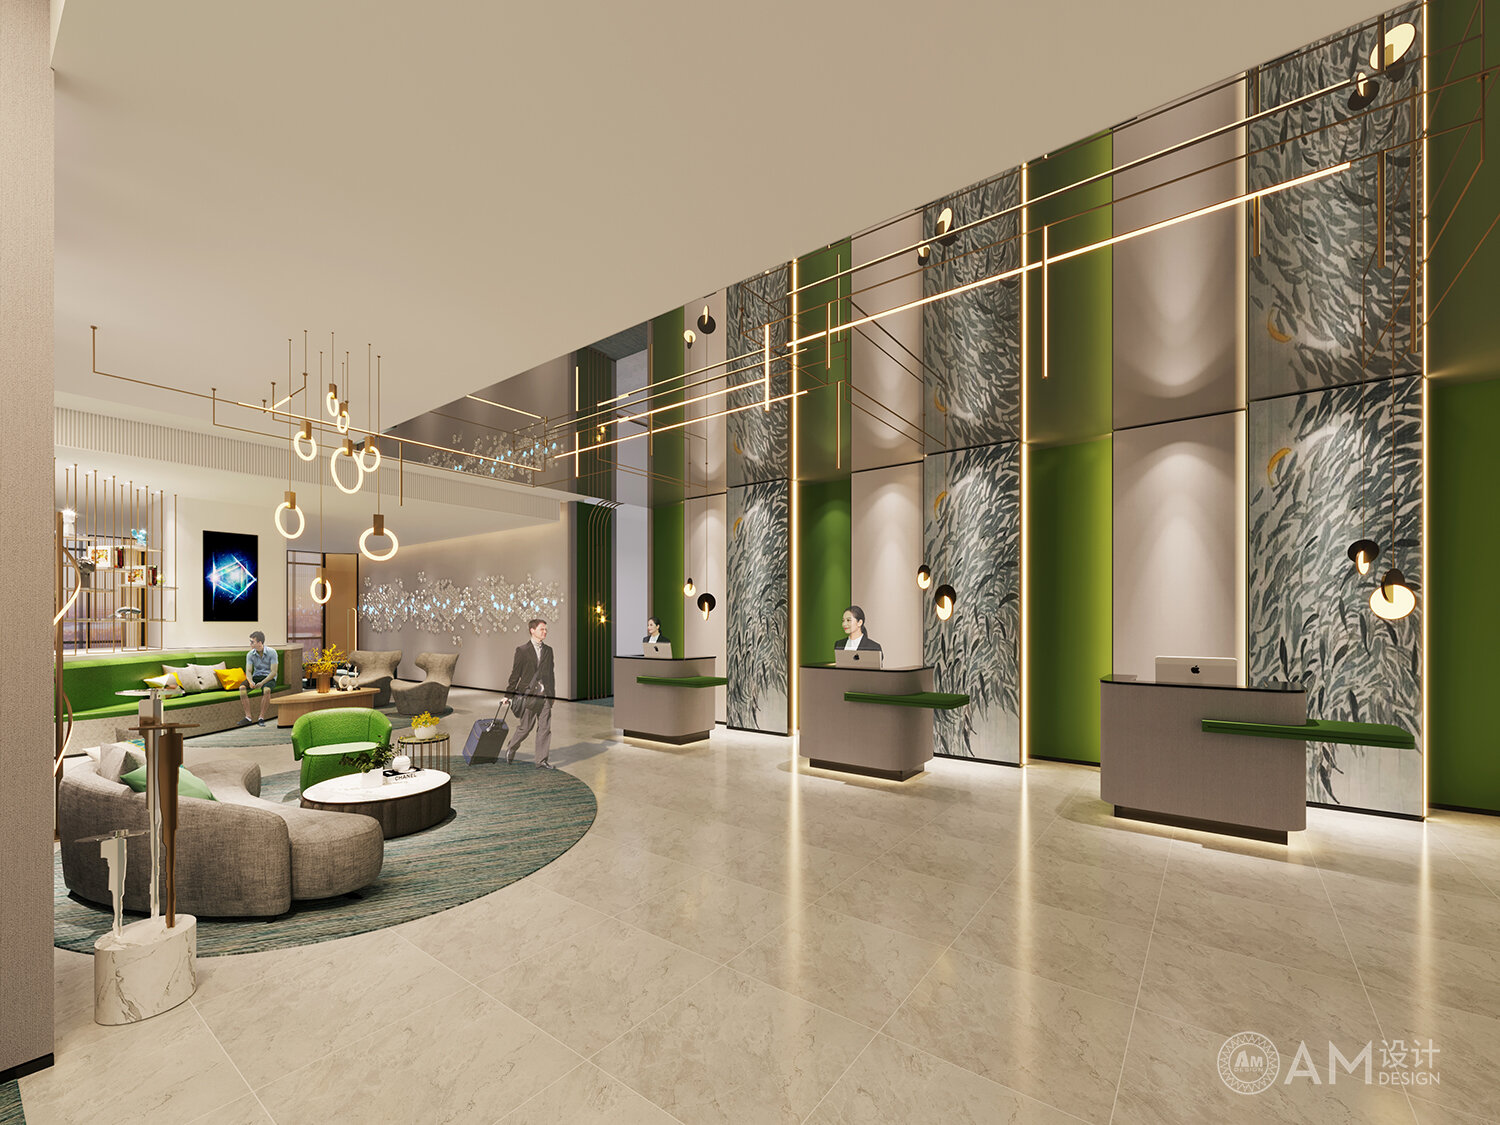 AM DESIGN | Shaanxi Weinan Hotel Lobby & Front Desk Design